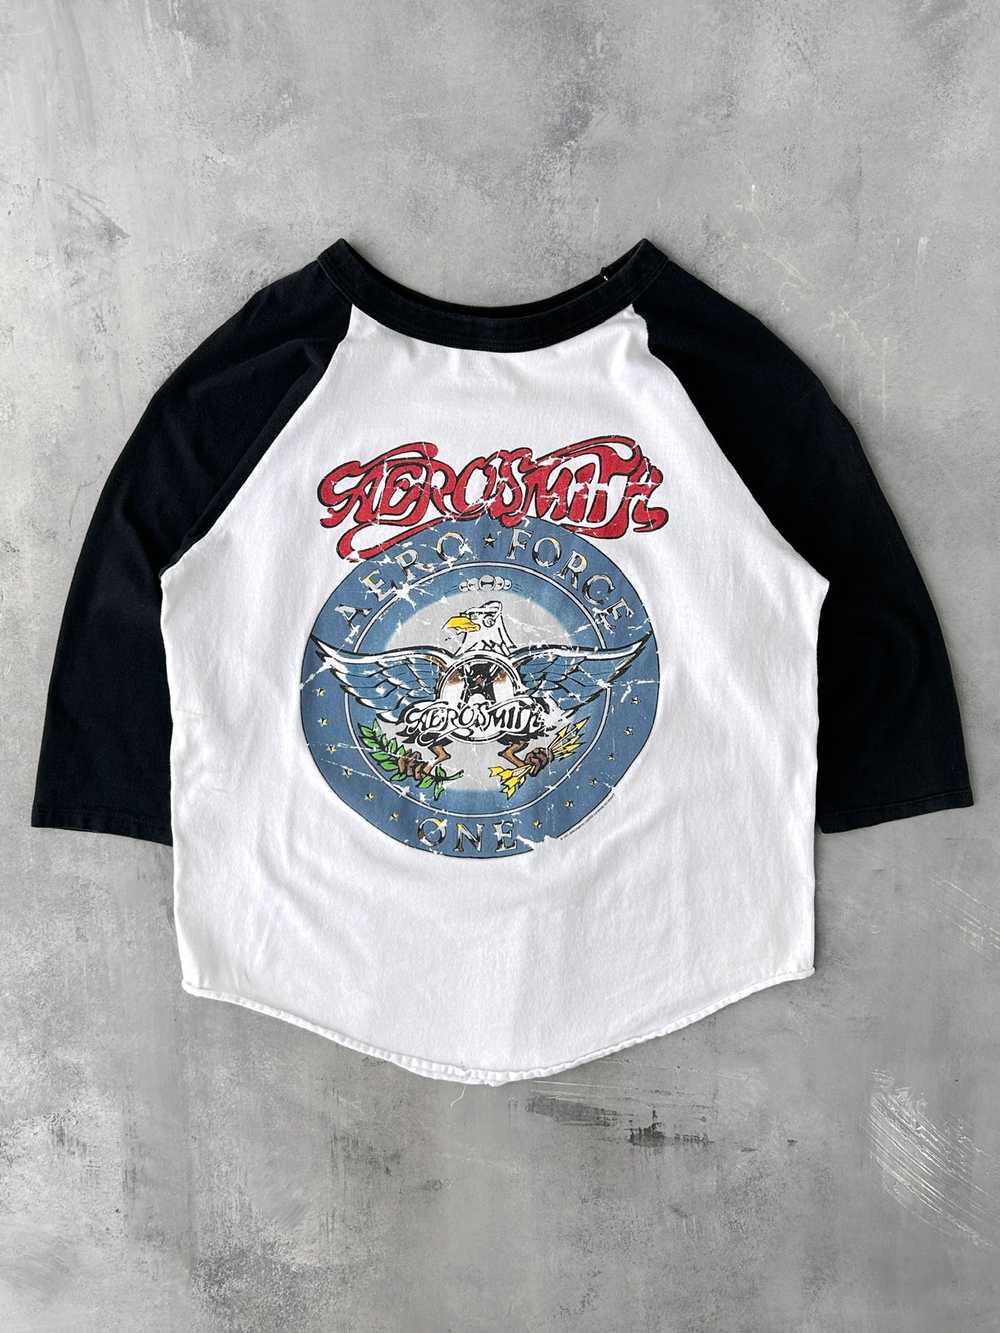 Aerosmith Baseball T-Shirt '97 - Large - image 1